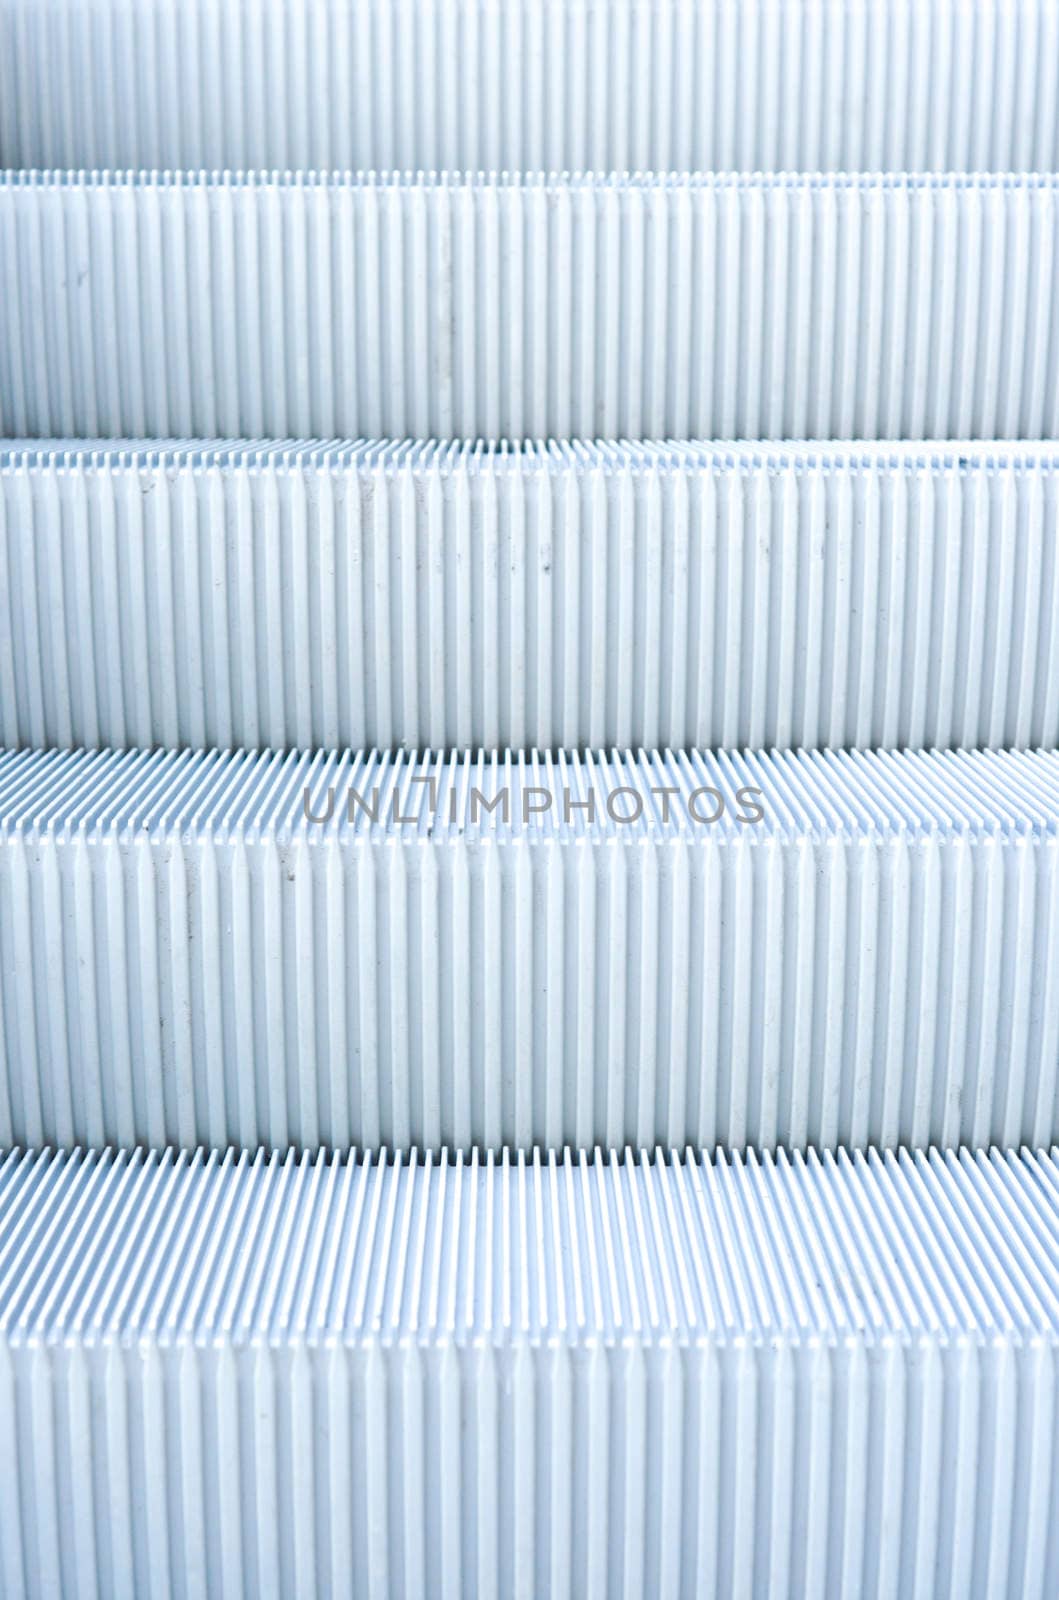 close up of escalator steps